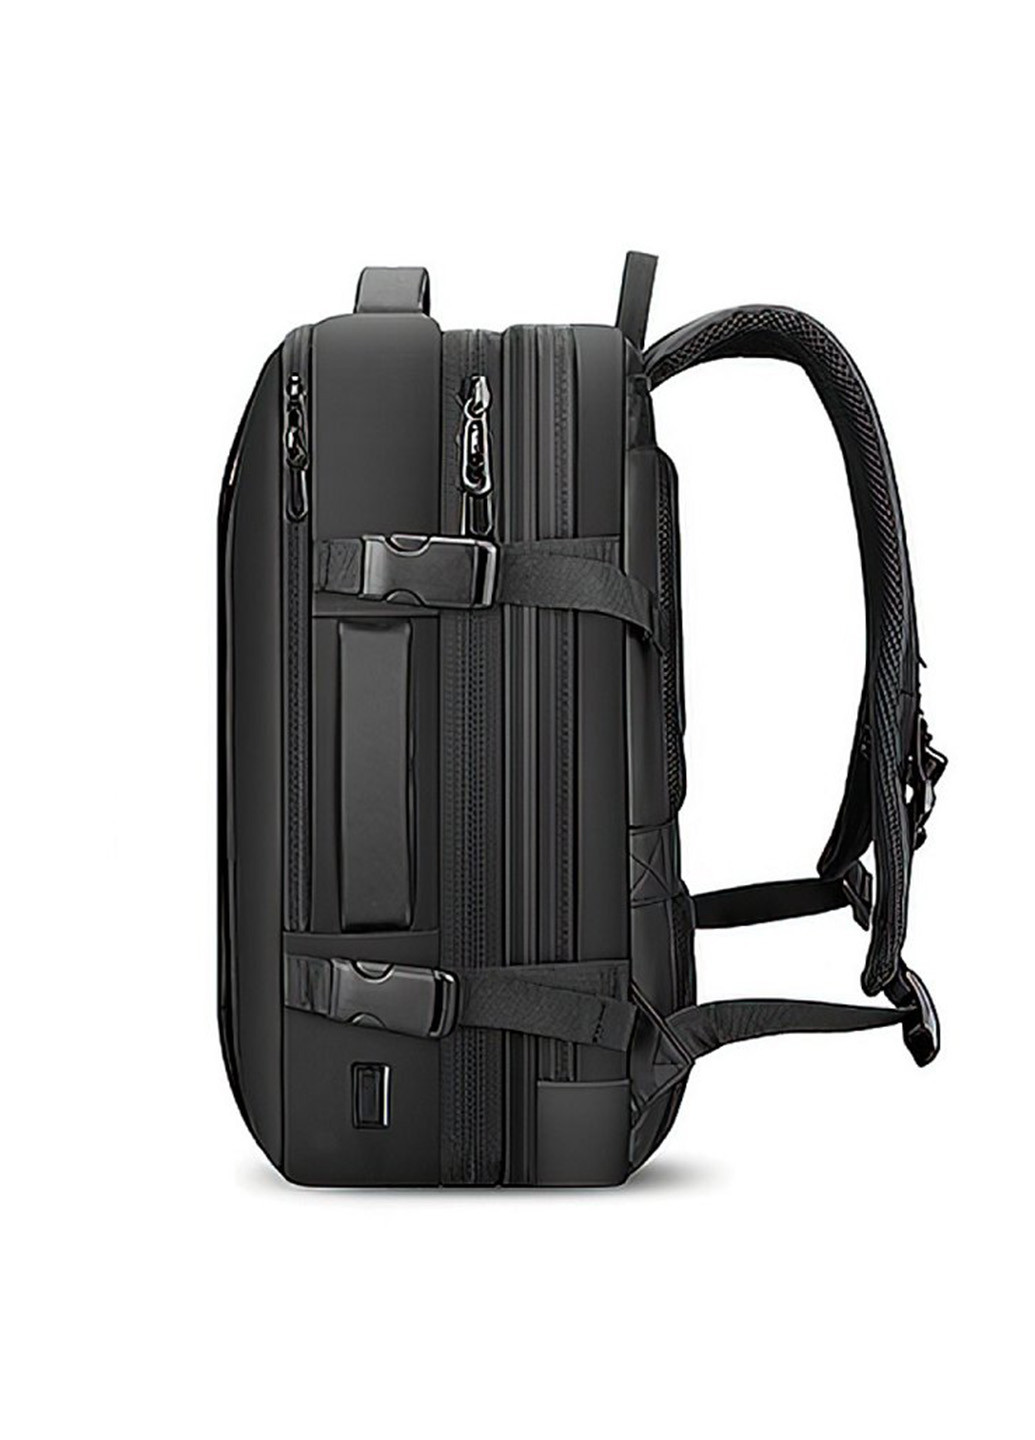 Рюкзак для путешествий MR9299KR Big Size с возможностью расширения Mark Ryden (258705984)